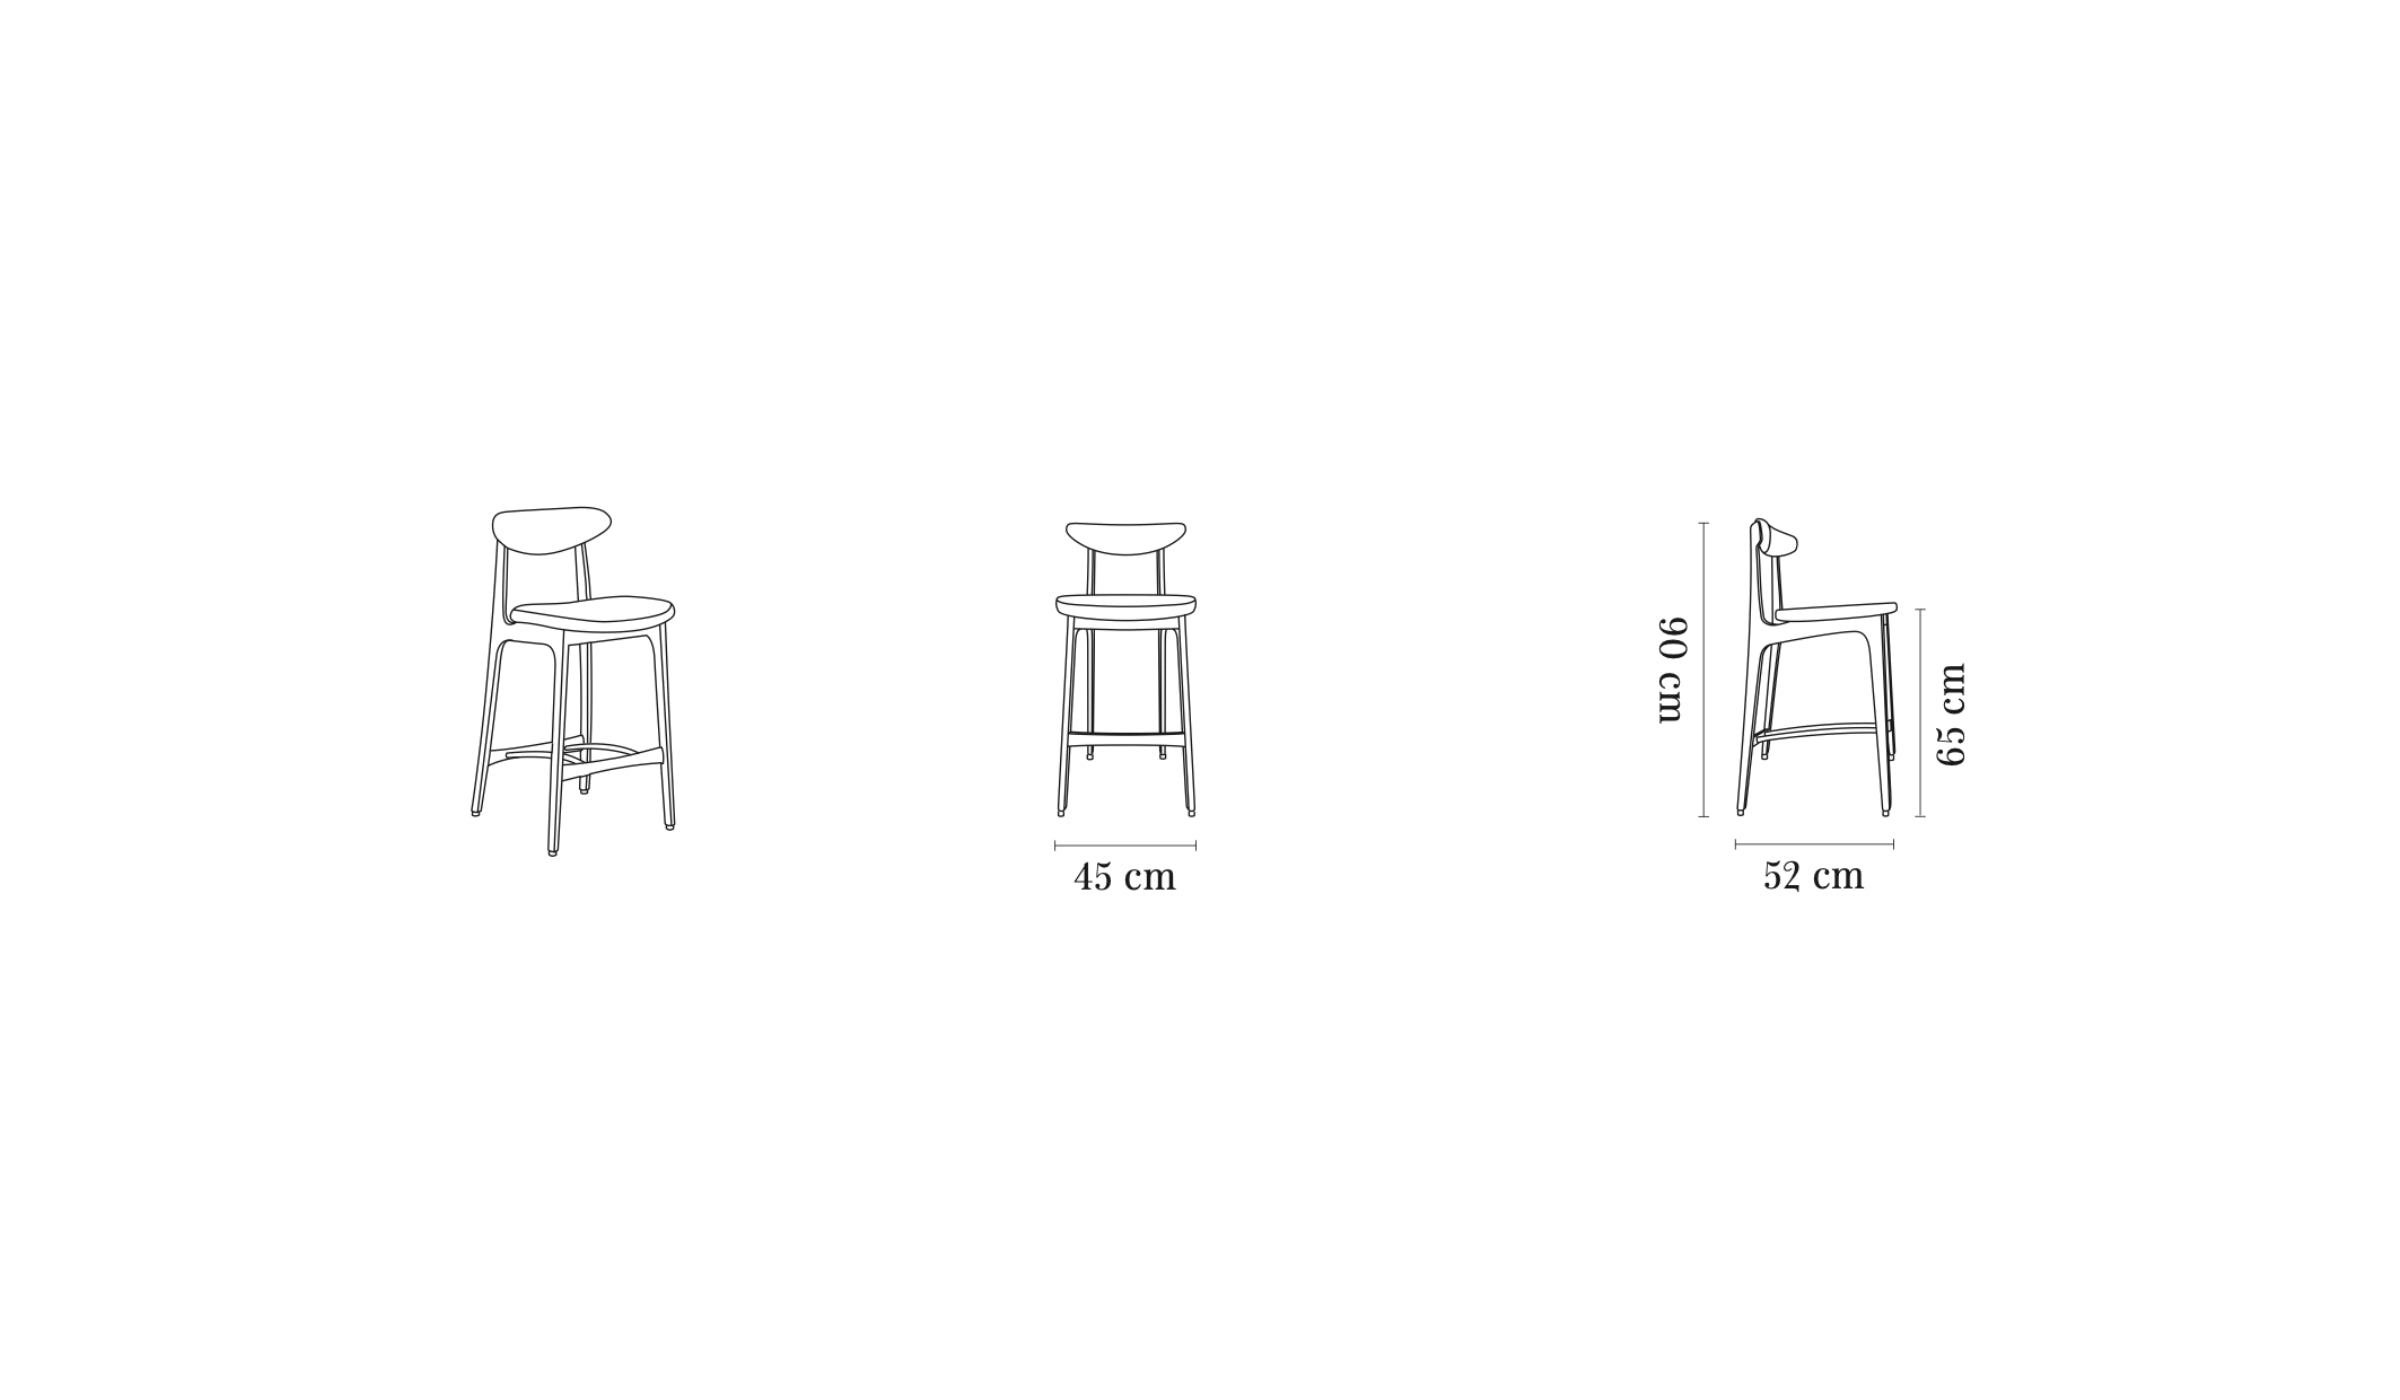 Chaise de bar-200-190 - Chaise de comptoir, tissu velours lumineux, rose--NOVINEA-366 CONCEPT